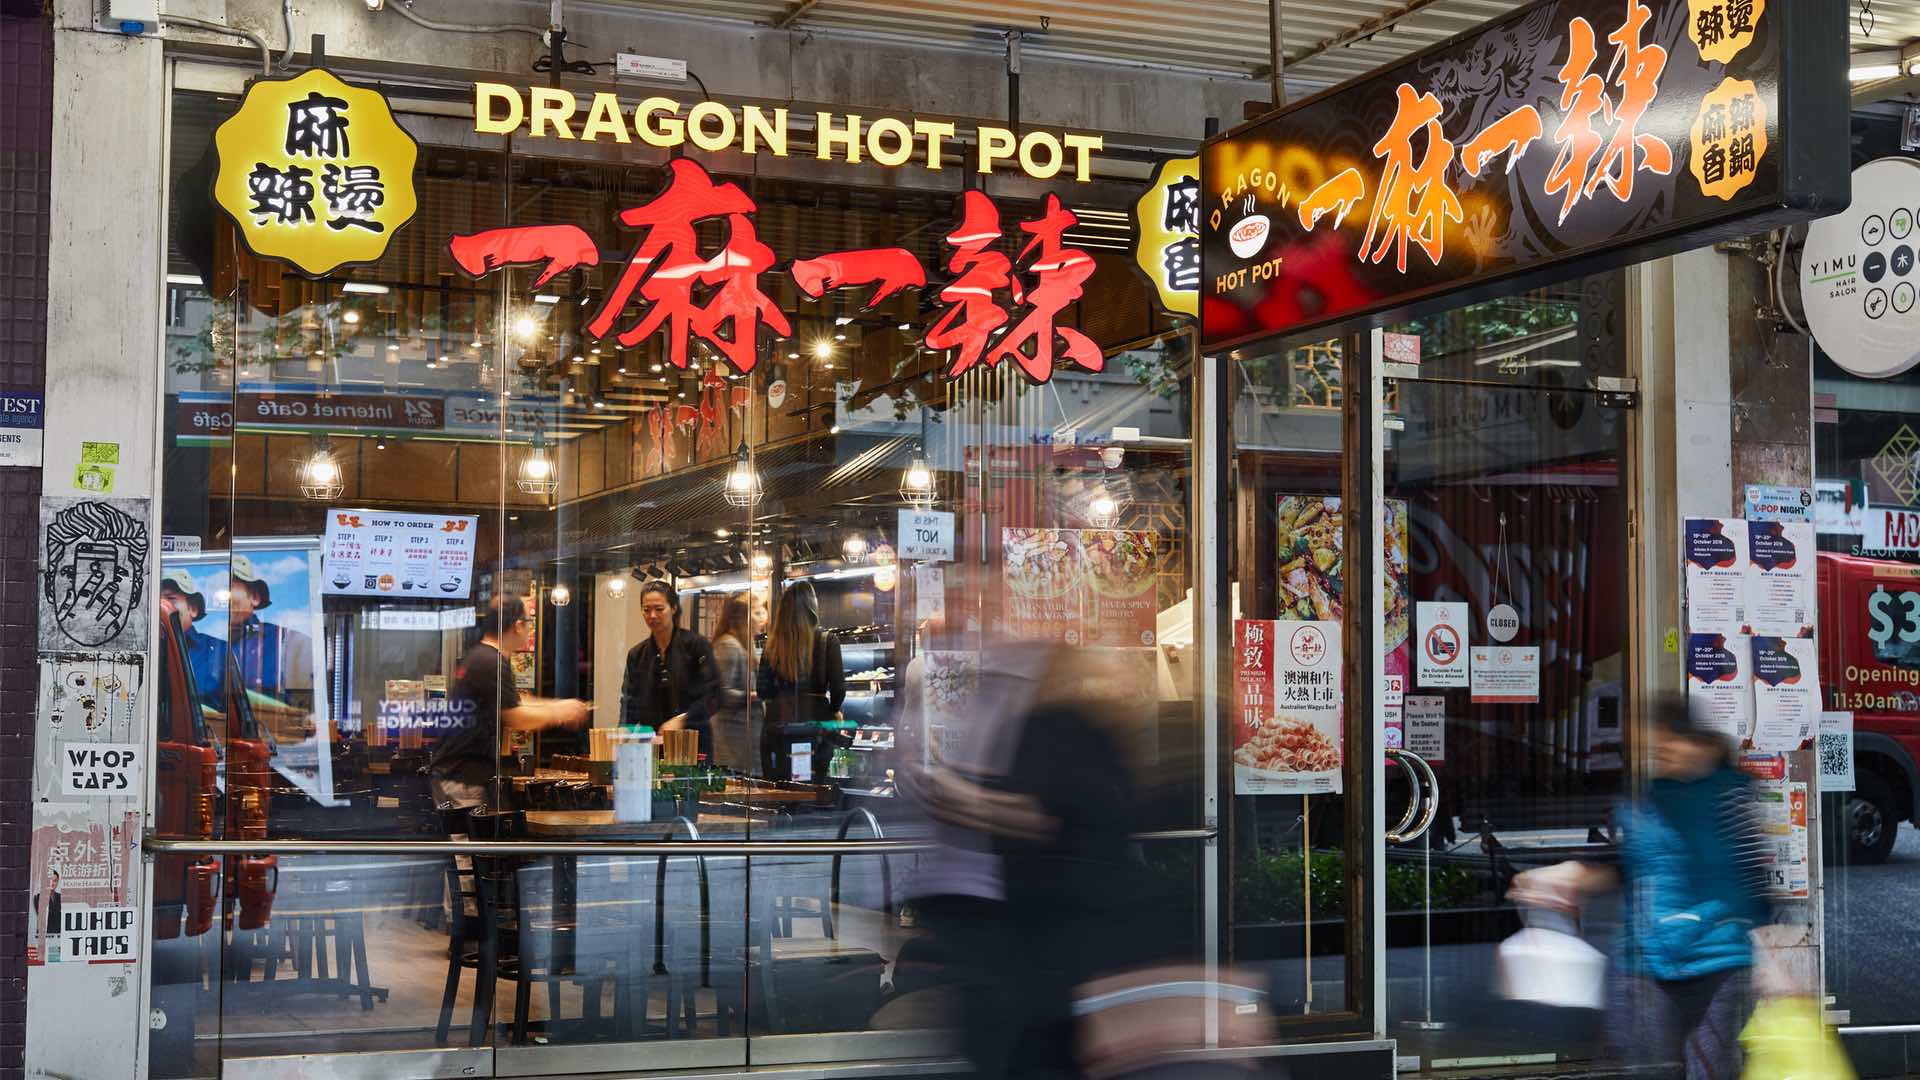 Dragon Hot Pot Russell Street